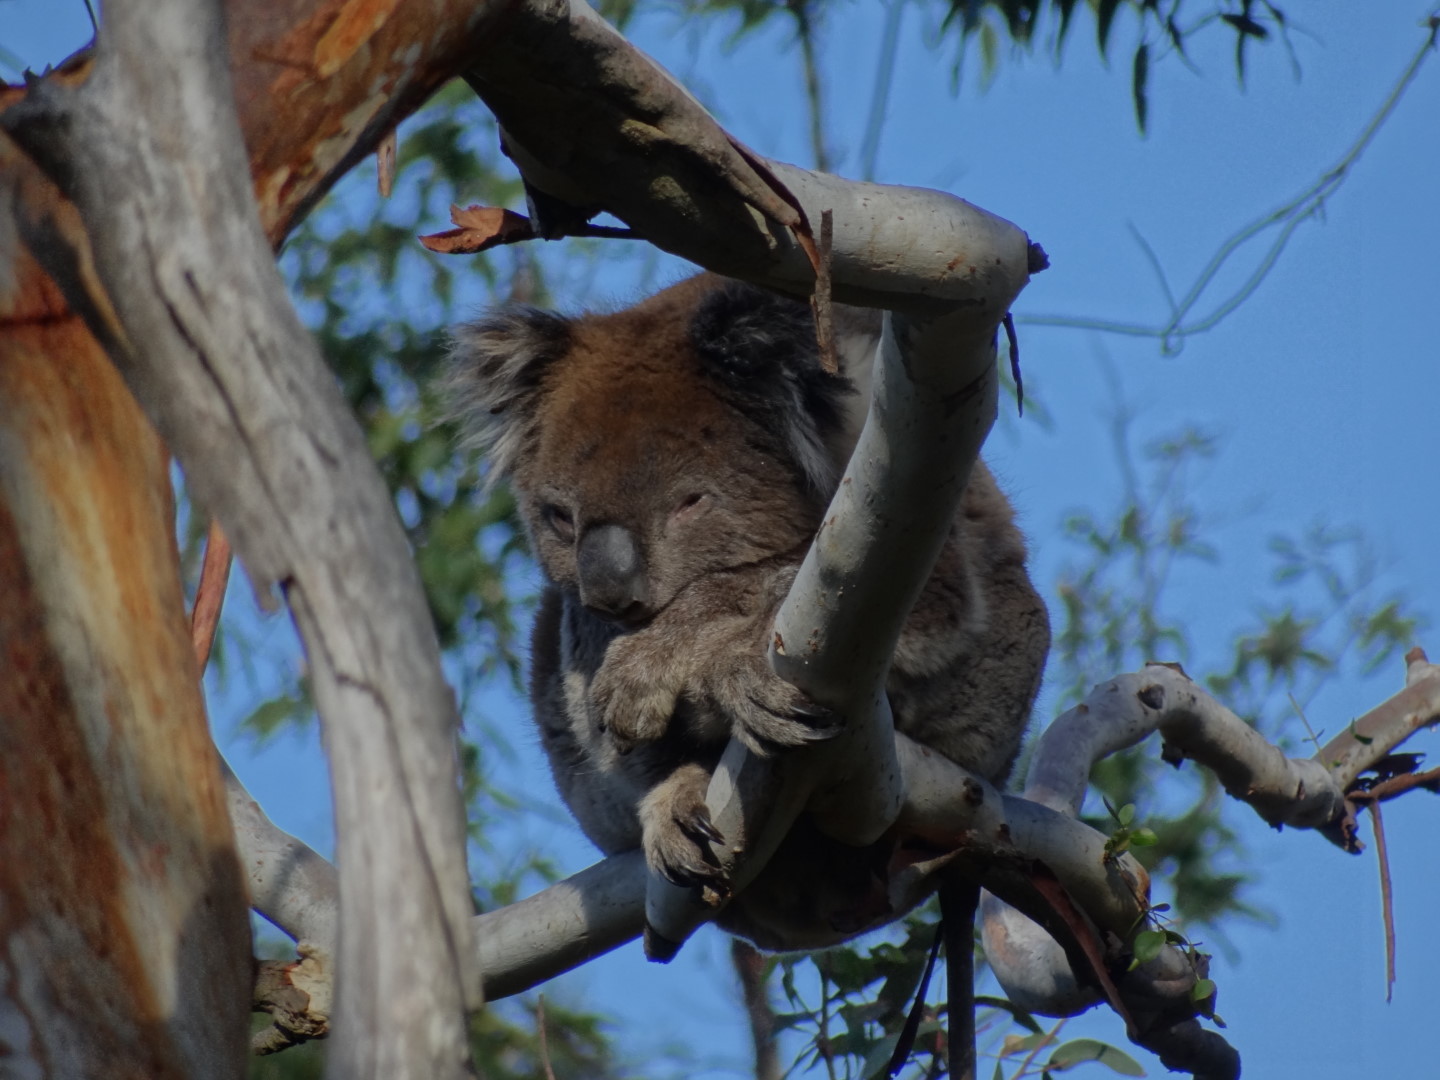 Our first Koalas